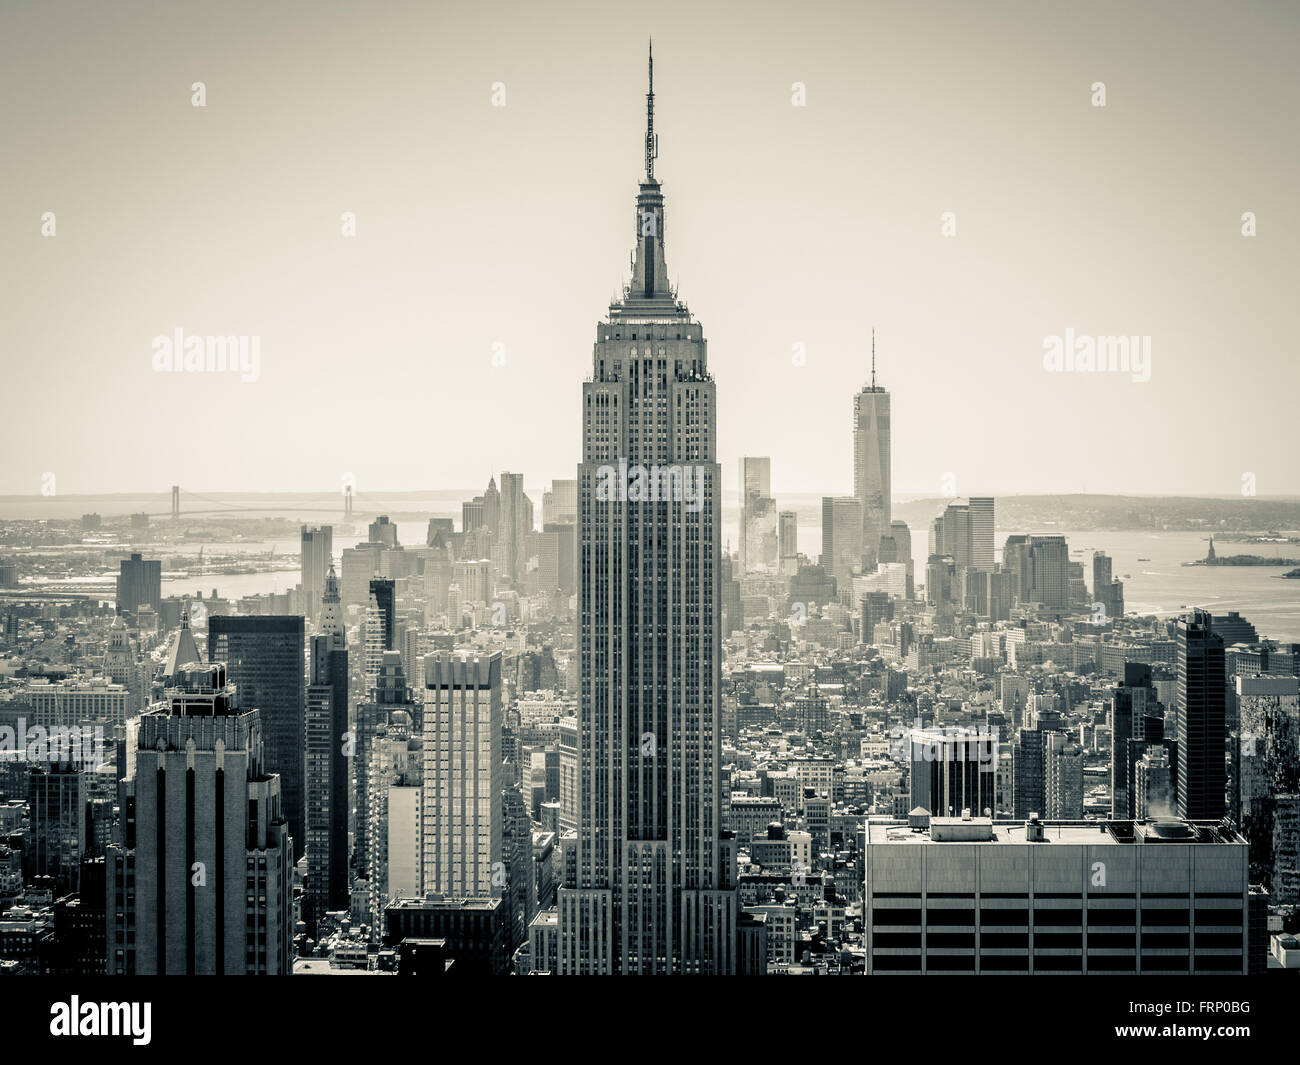 L'Empire State Building, New York City, USA, vu à partir de la plate-forme d'observation du Rockefeller Center (Haut de la roche). Banque D'Images